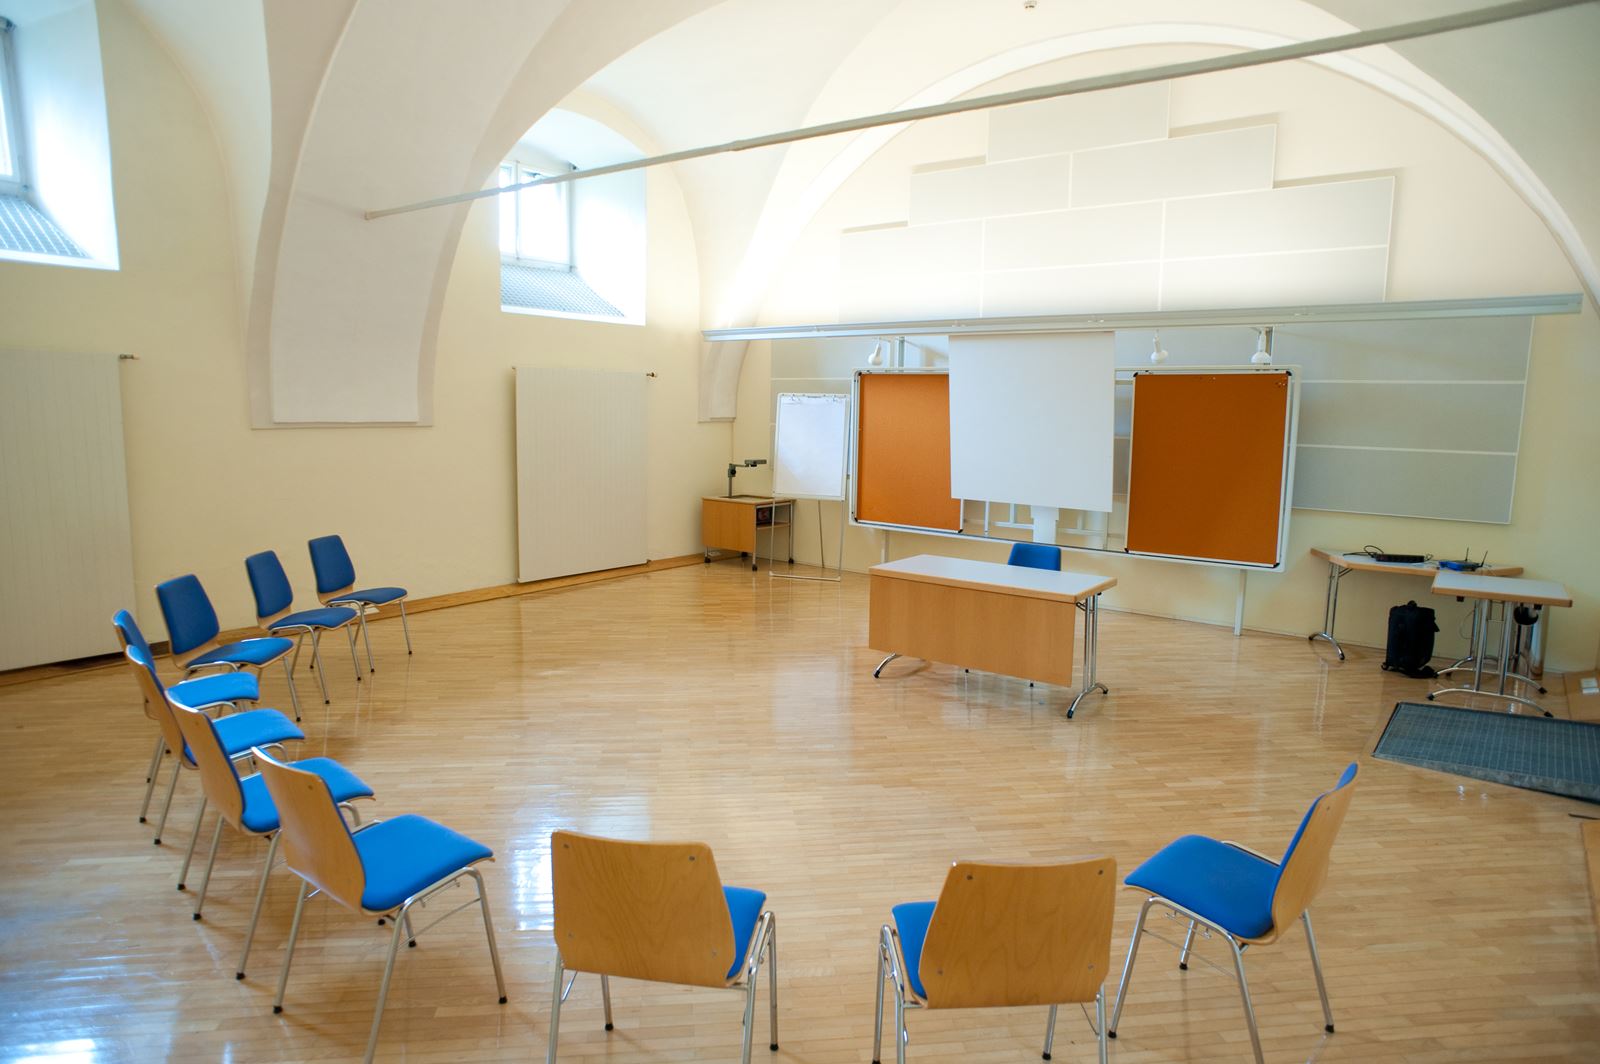 Seminarraum2 mit Sessel Halbkreis, Pinwand und Leinwand. Licht strahlt durch die Oberfenster